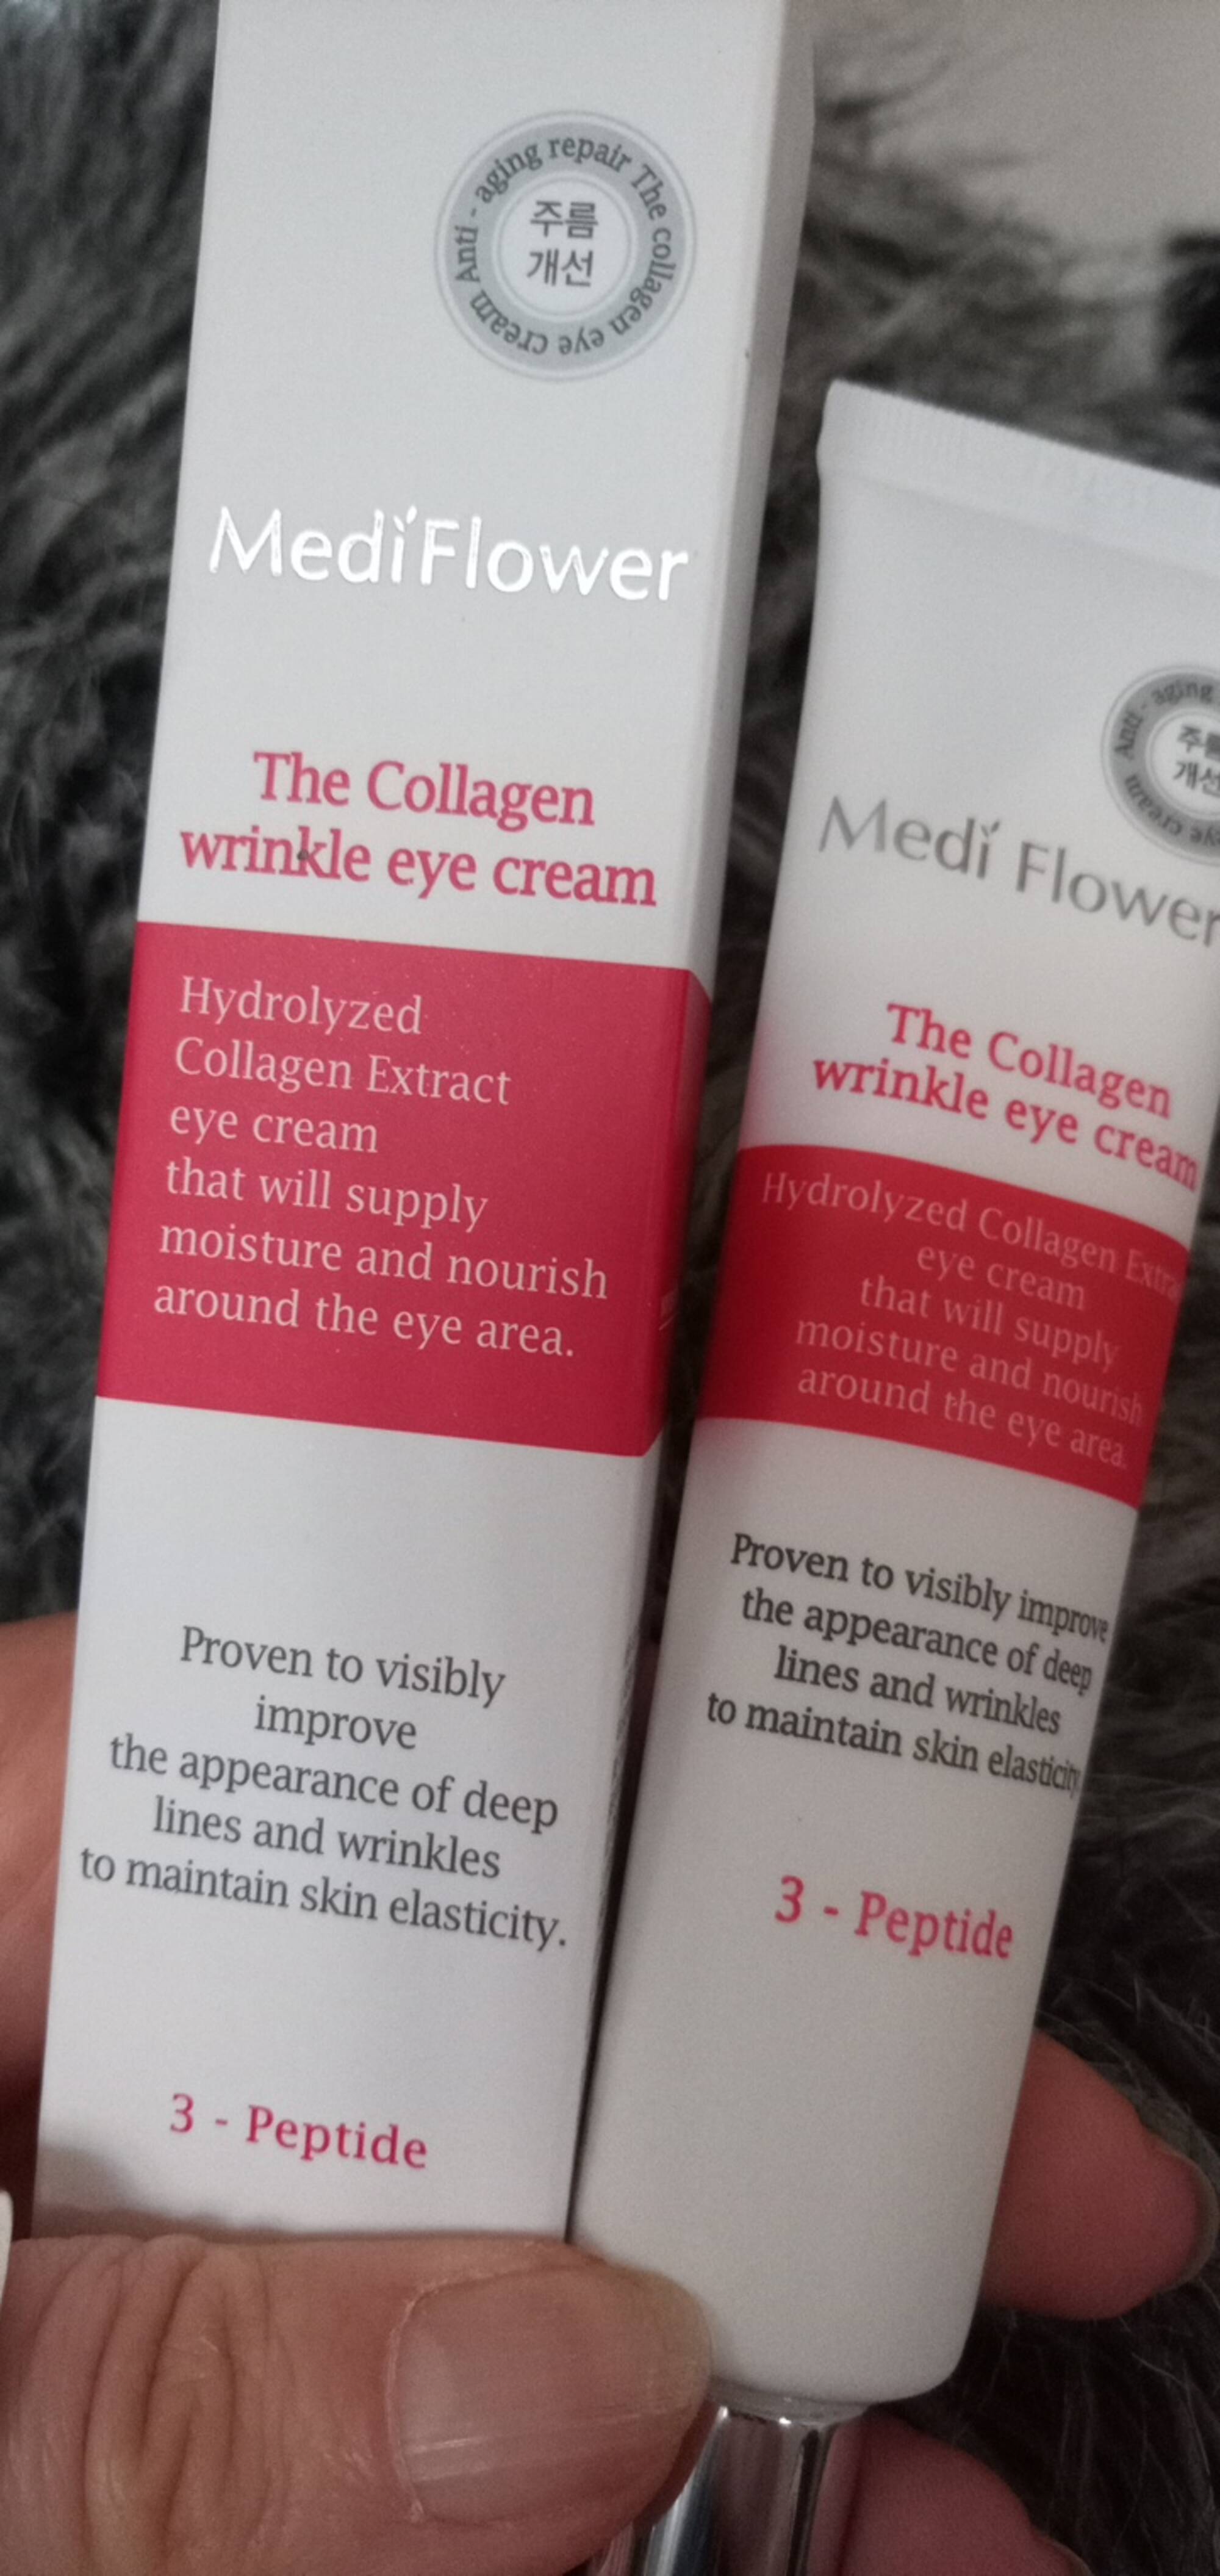 MEDI FLOWER - The collagen wrinkle eye cream 